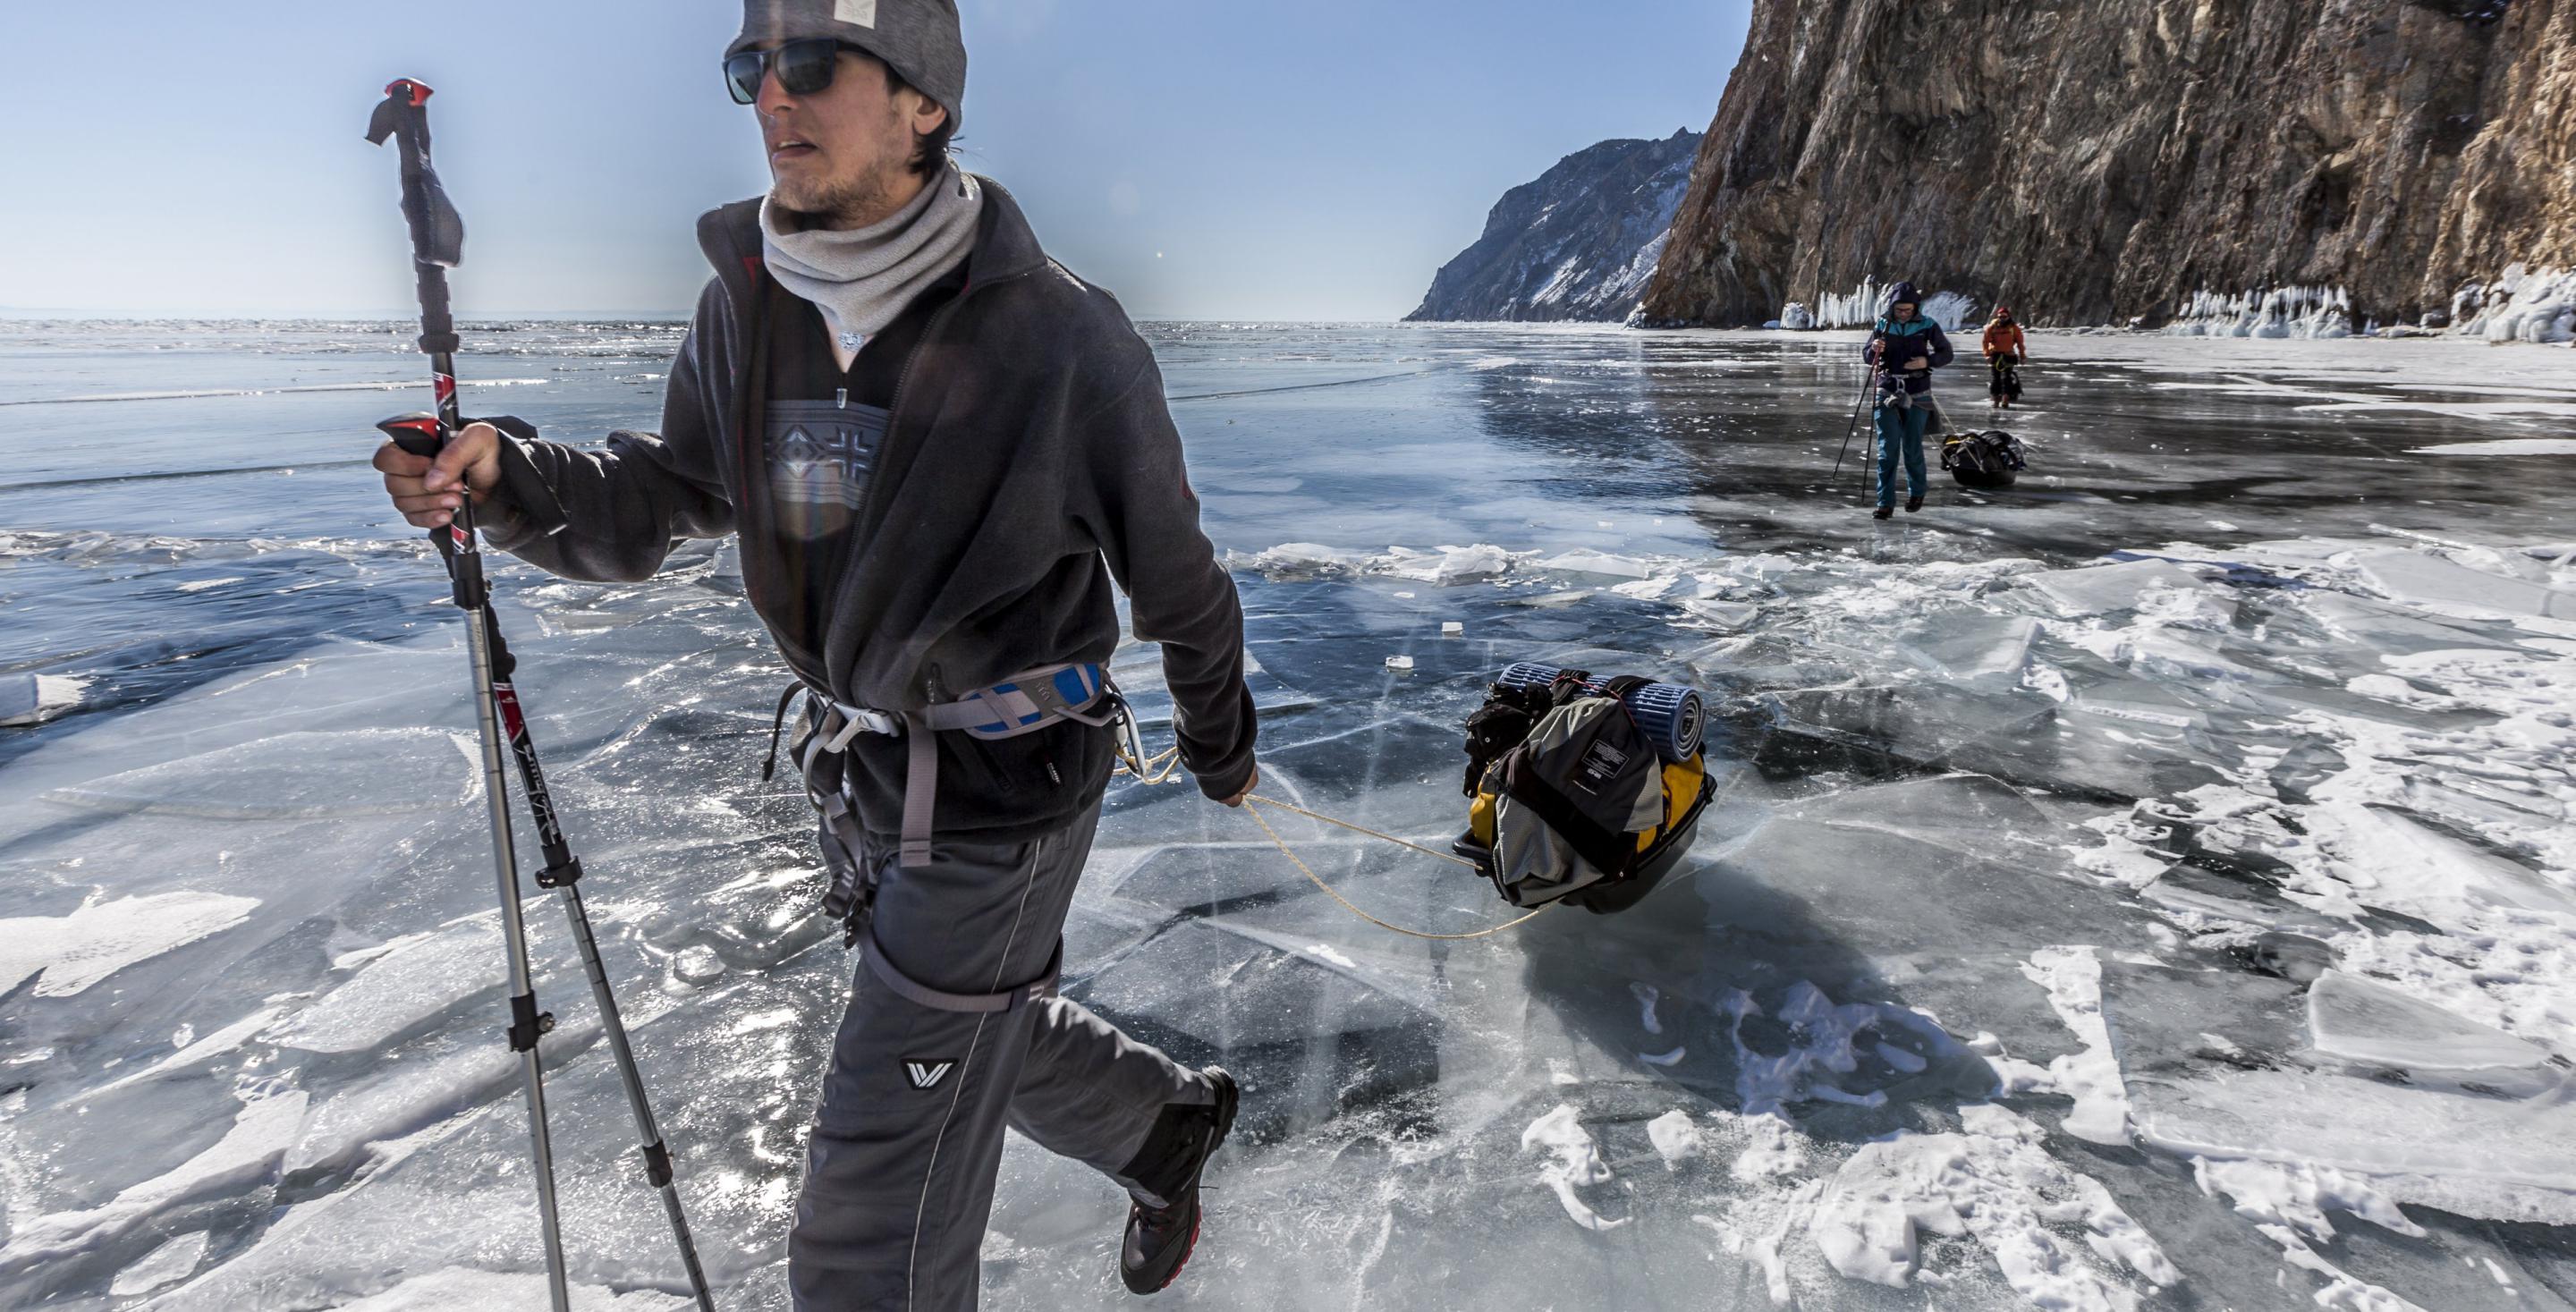 De plus en plus de touristes du monde entier viennent ici découvrir un autre univers. Cette fois c’est le patin à glace en autonomie sur une semaine autour de l'Ile d'Olkhon. Lac Baïkal - Sibérie - Russie